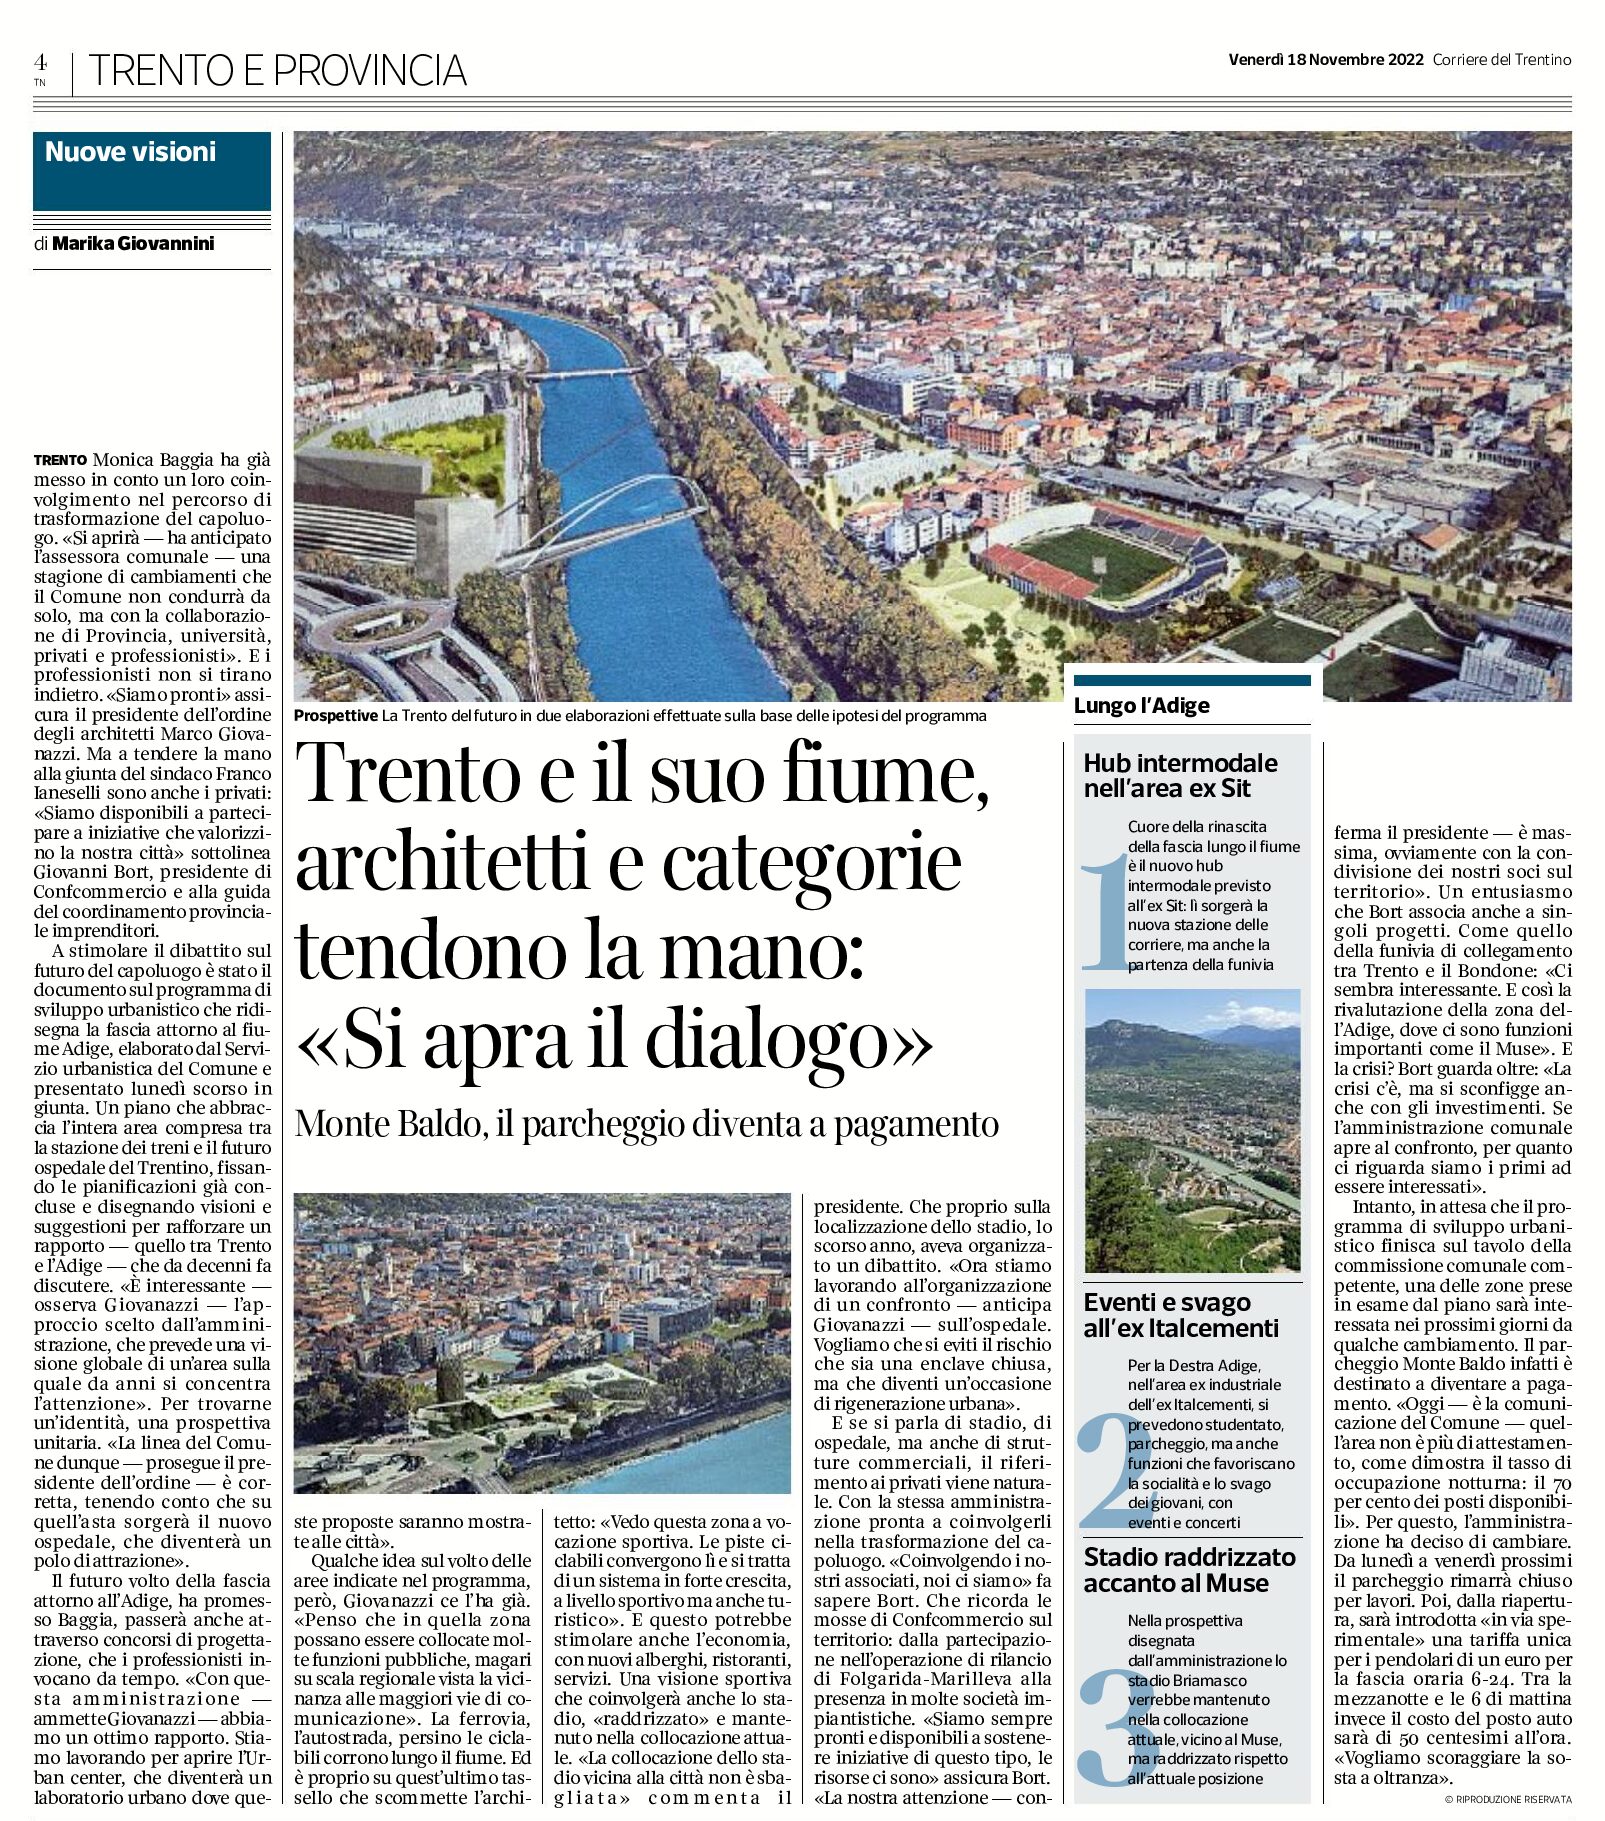 Trento e il suo fiume: architetti e categorie “si apra il dialogo”